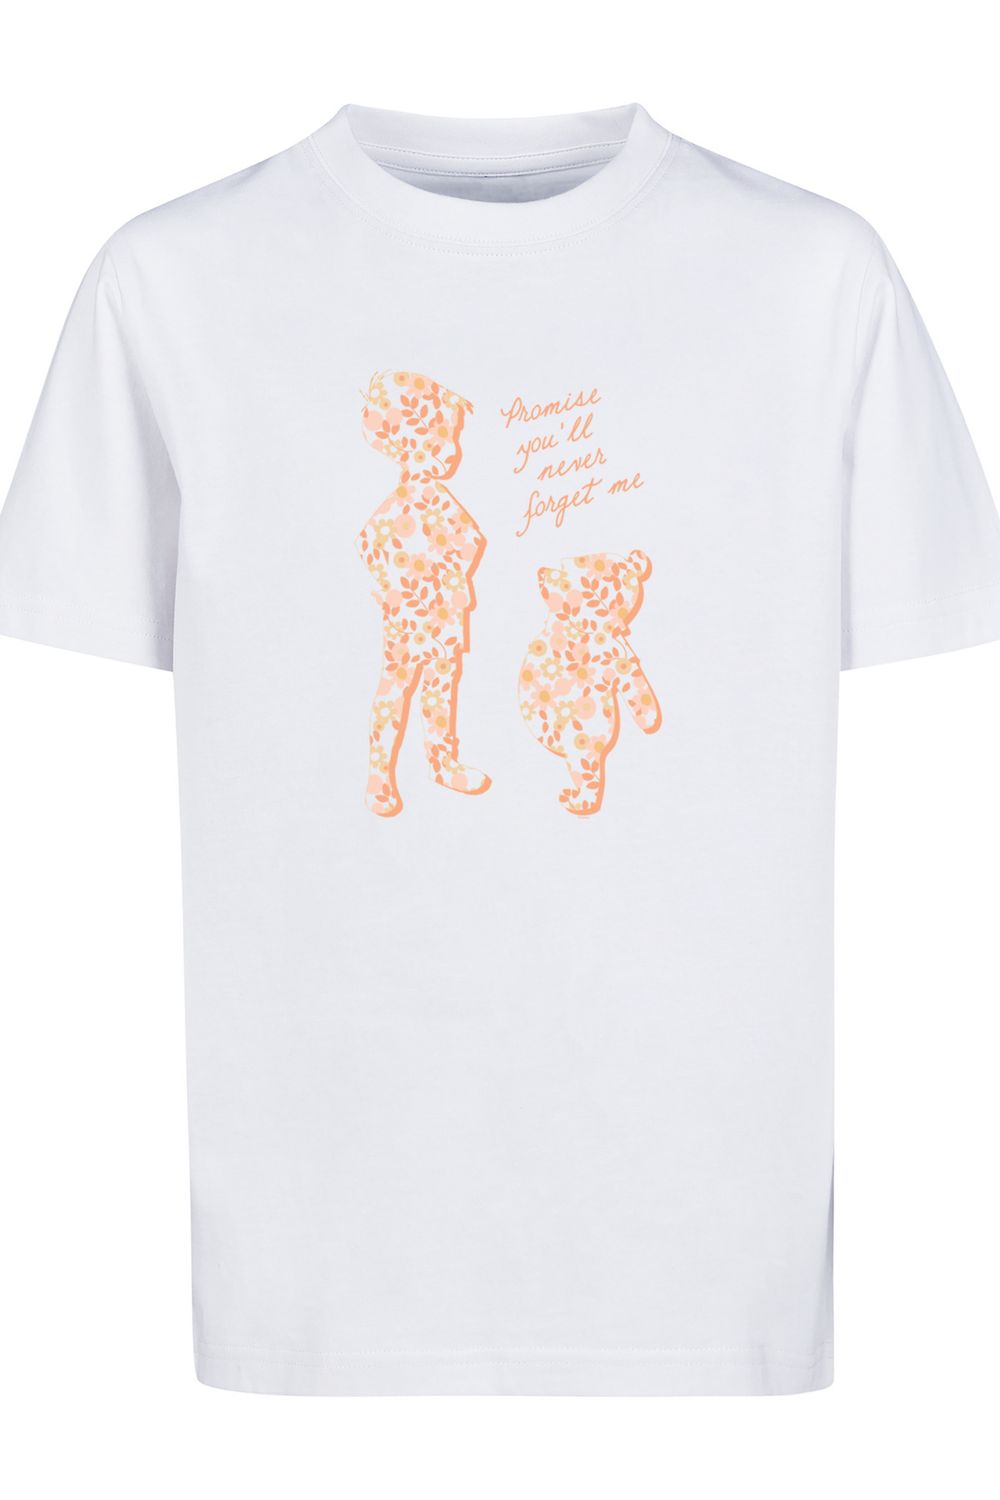 Sie Pooh werden - das Kinder dem Basic-T-Shirt für Trendyol vergessen nie Kinder Winnie Disney F4NT4STIC mit Versprechen, The